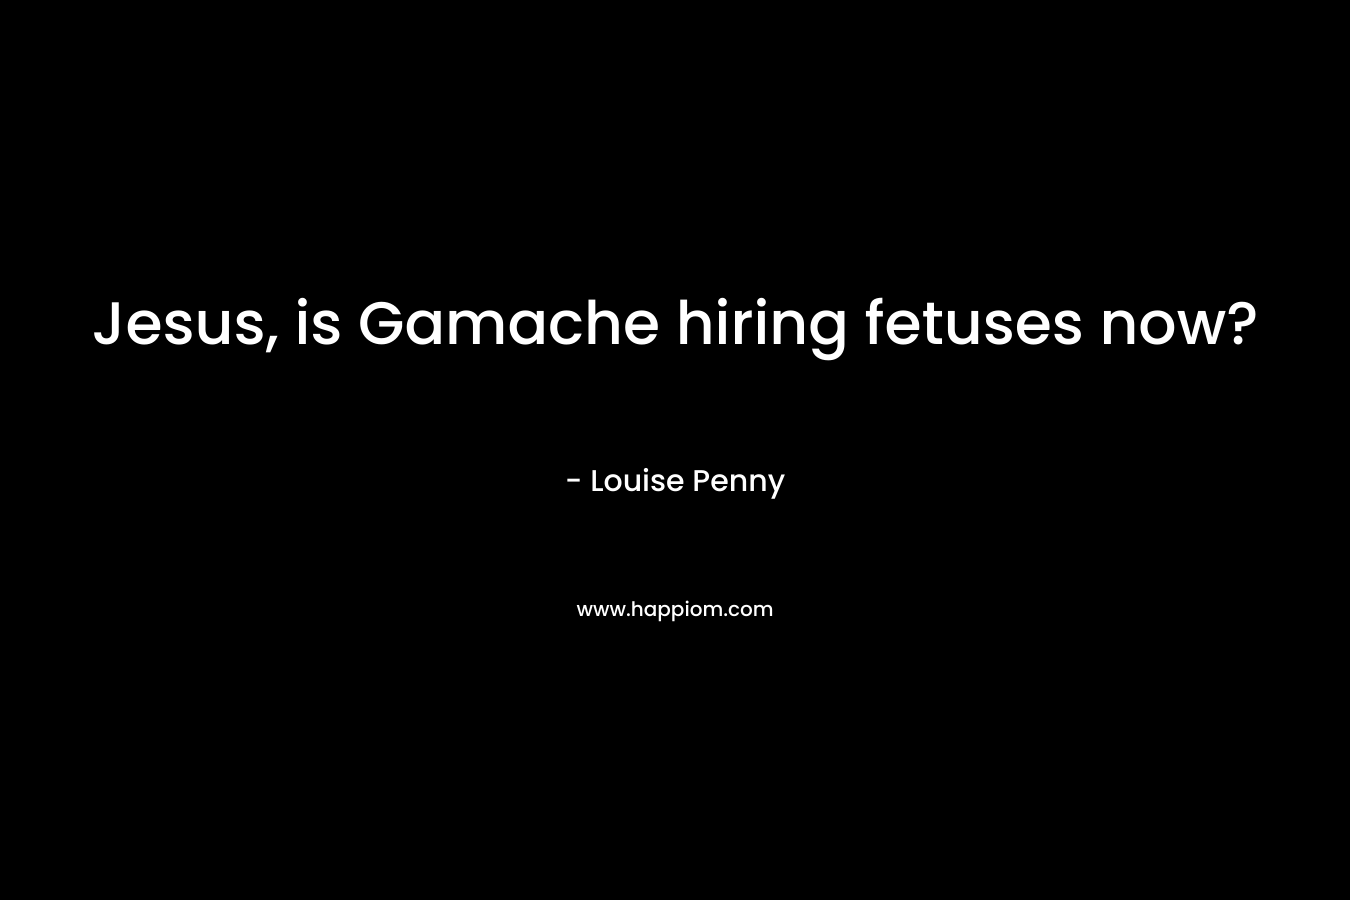 Jesus, is Gamache hiring fetuses now?